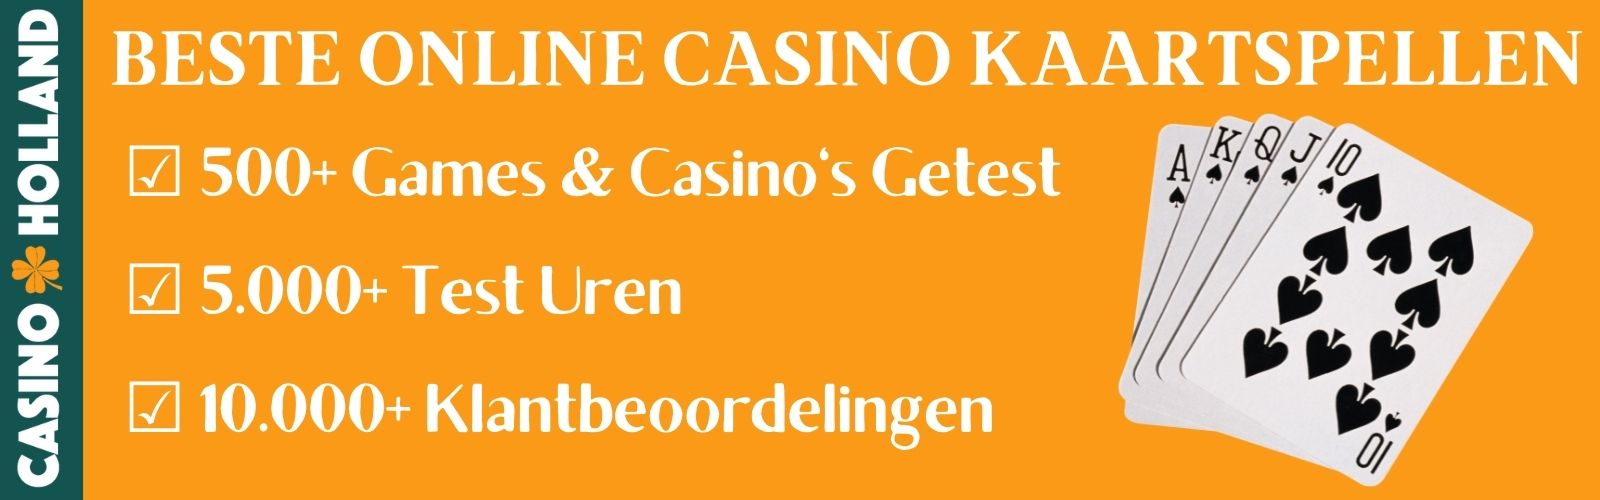 Online Casino Kaartspellen